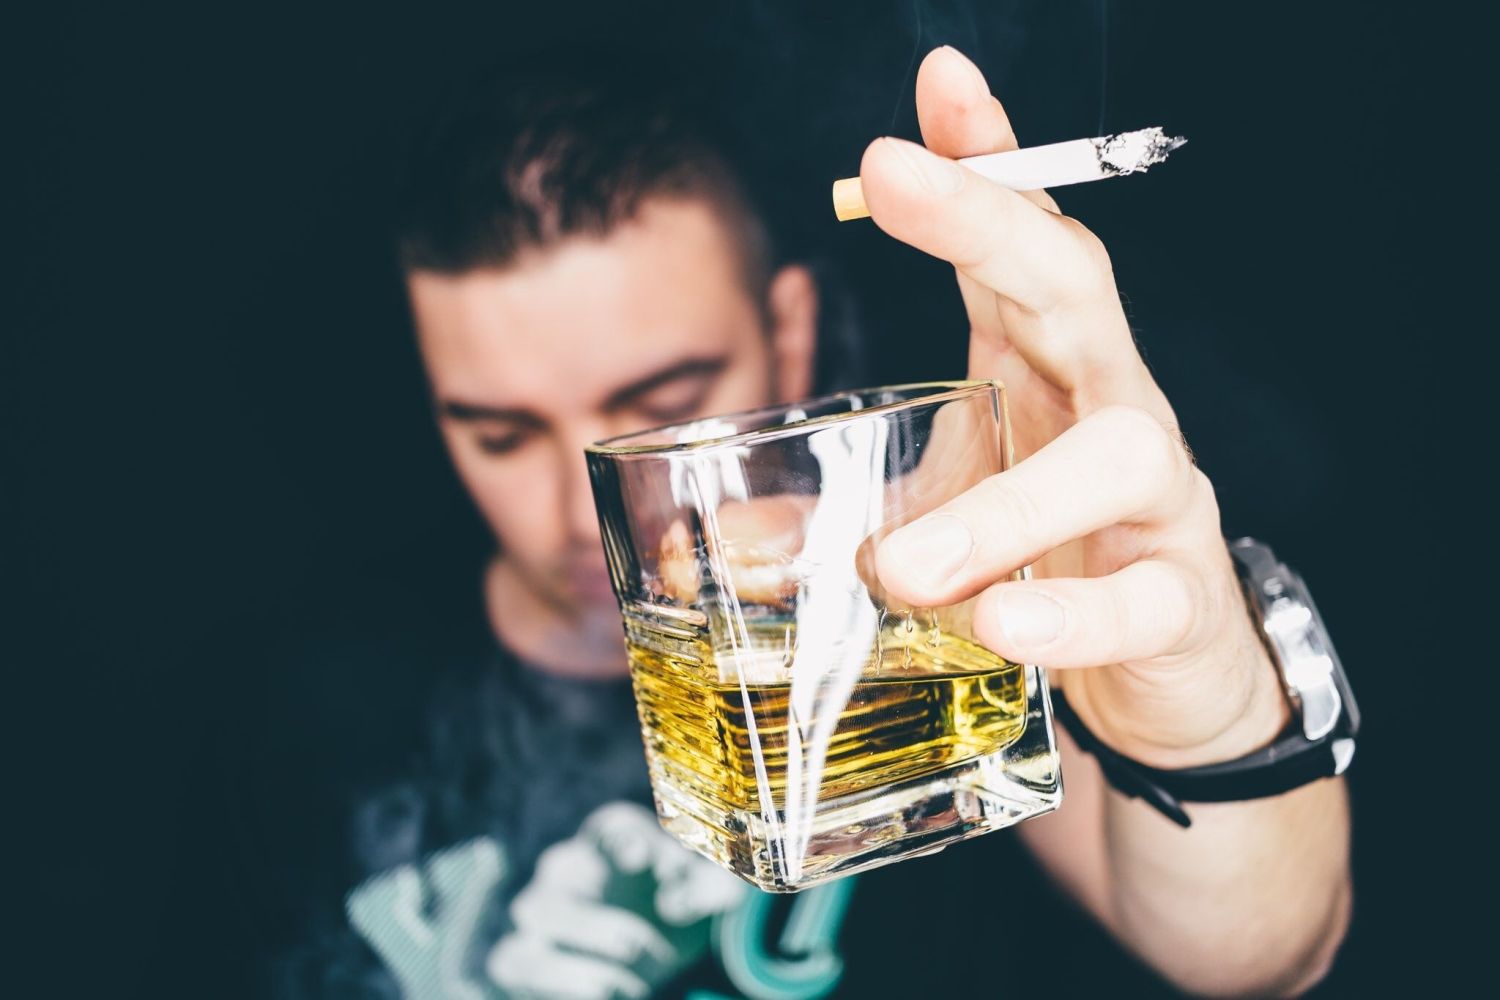 El consumo excesivo de alcohol puede dañar el hígado, el corazón, el cerebro y otros órganos vitales